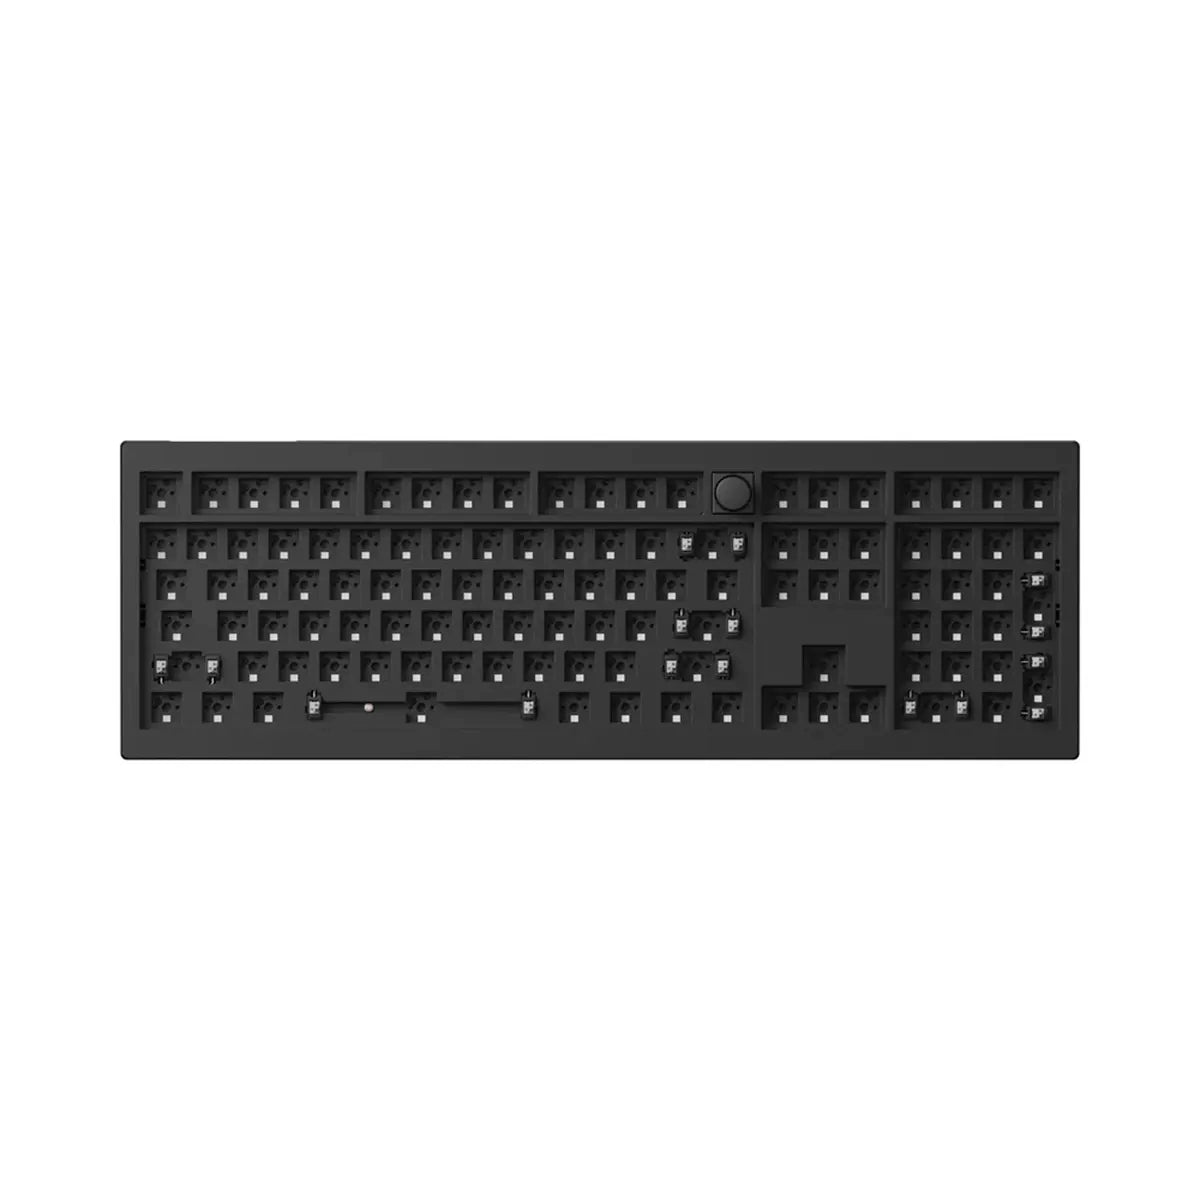 Keychron V6 Max Full Size Keyboard Kit - Divinikey